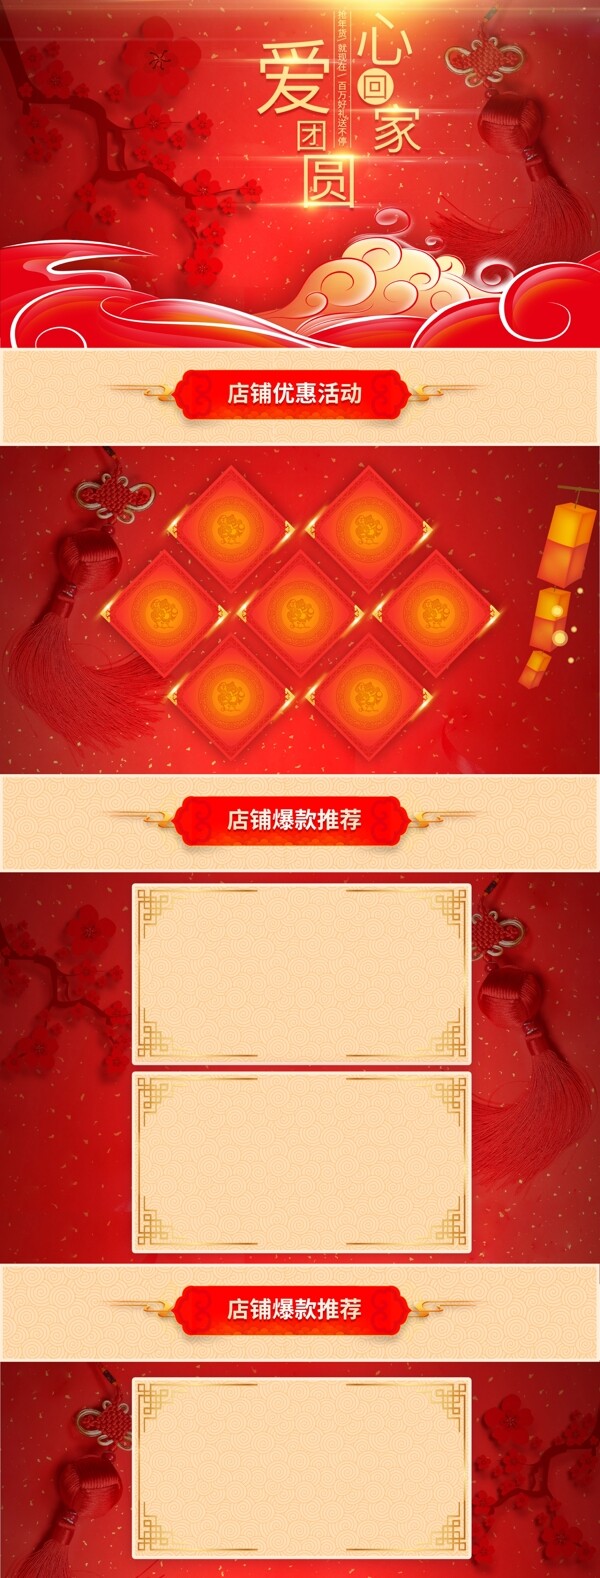 红色喜庆中国节年货节电商淘宝活动页首页